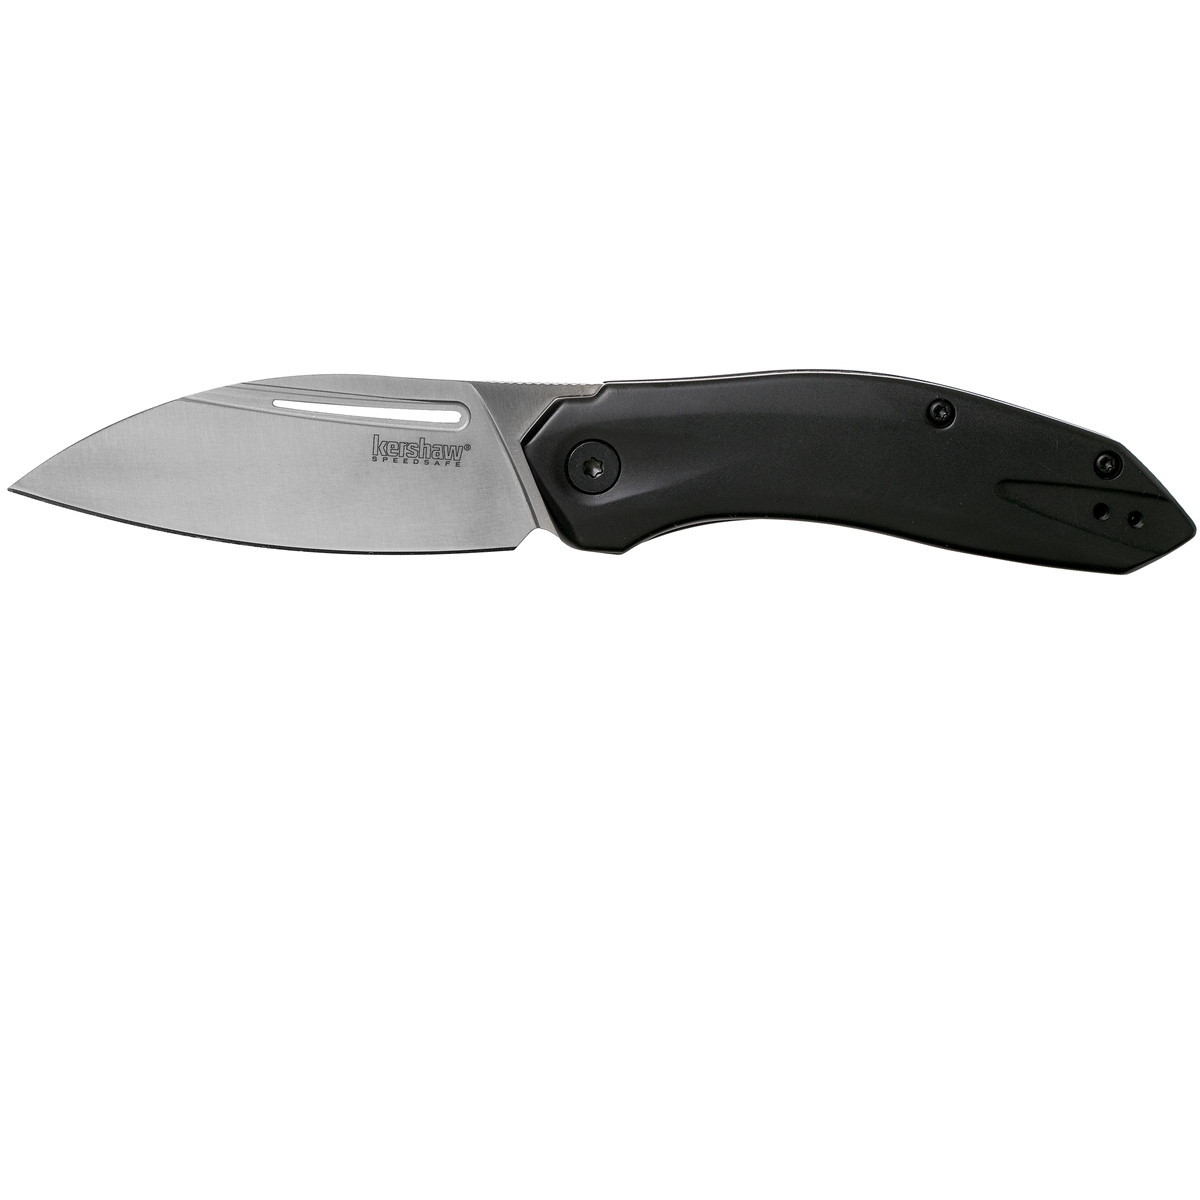 Полуавтоматический складной нож Kershaw Turismo, сталь D2, рукоять нержавеющая сталь - фото 1